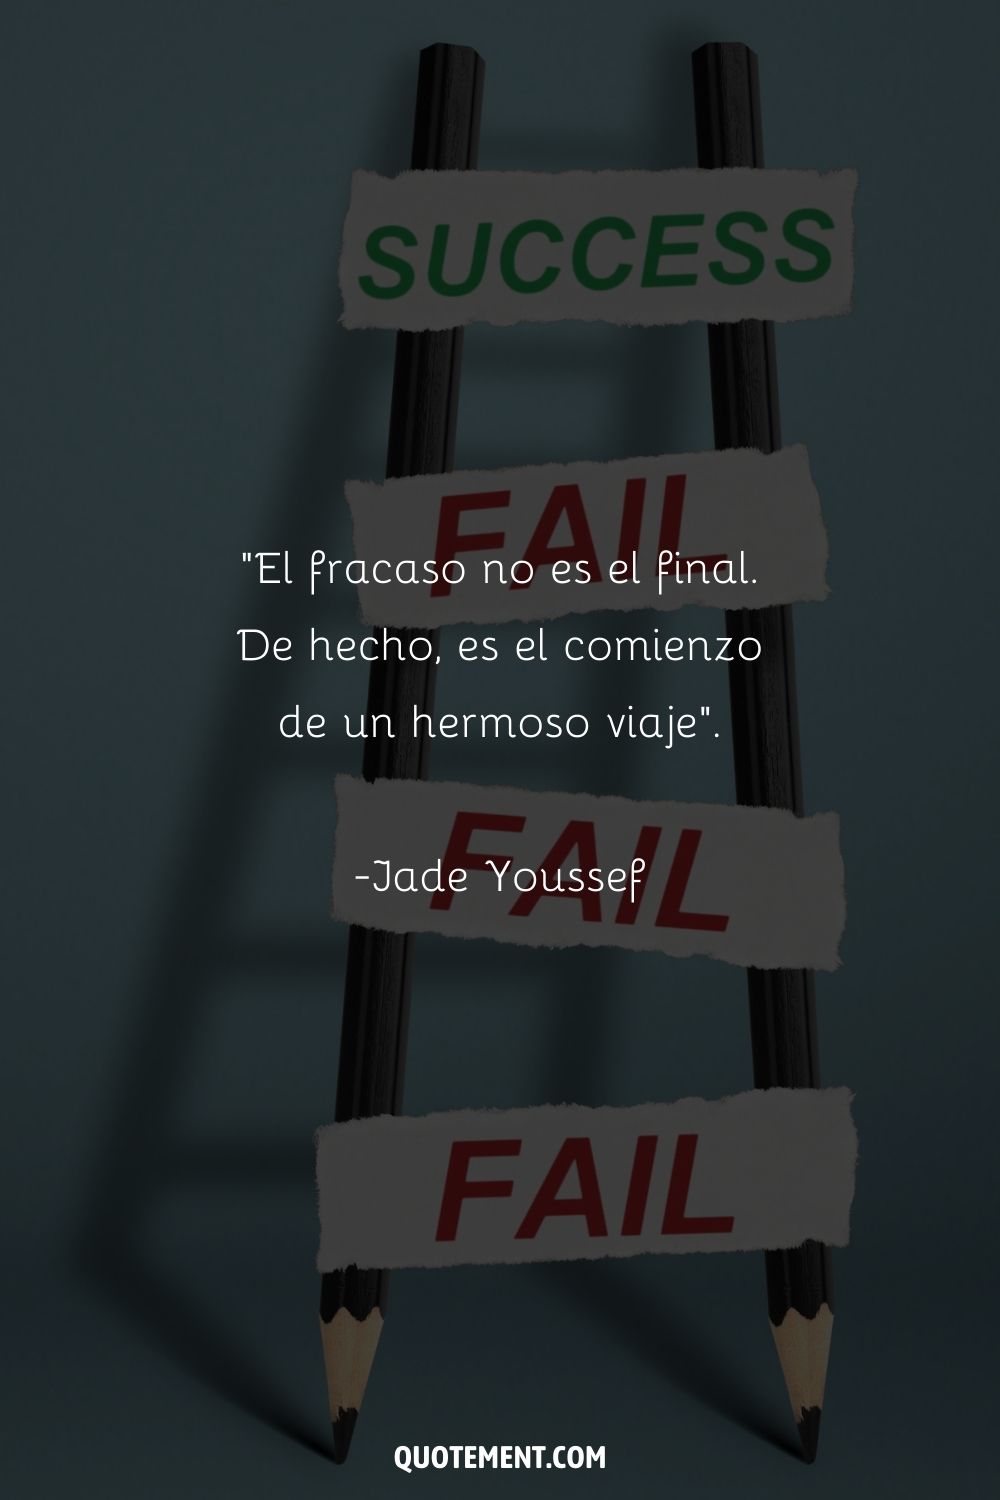 "El fracaso no es el final. De hecho, es el comienzo de un hermoso viaje". - Jade Youssef